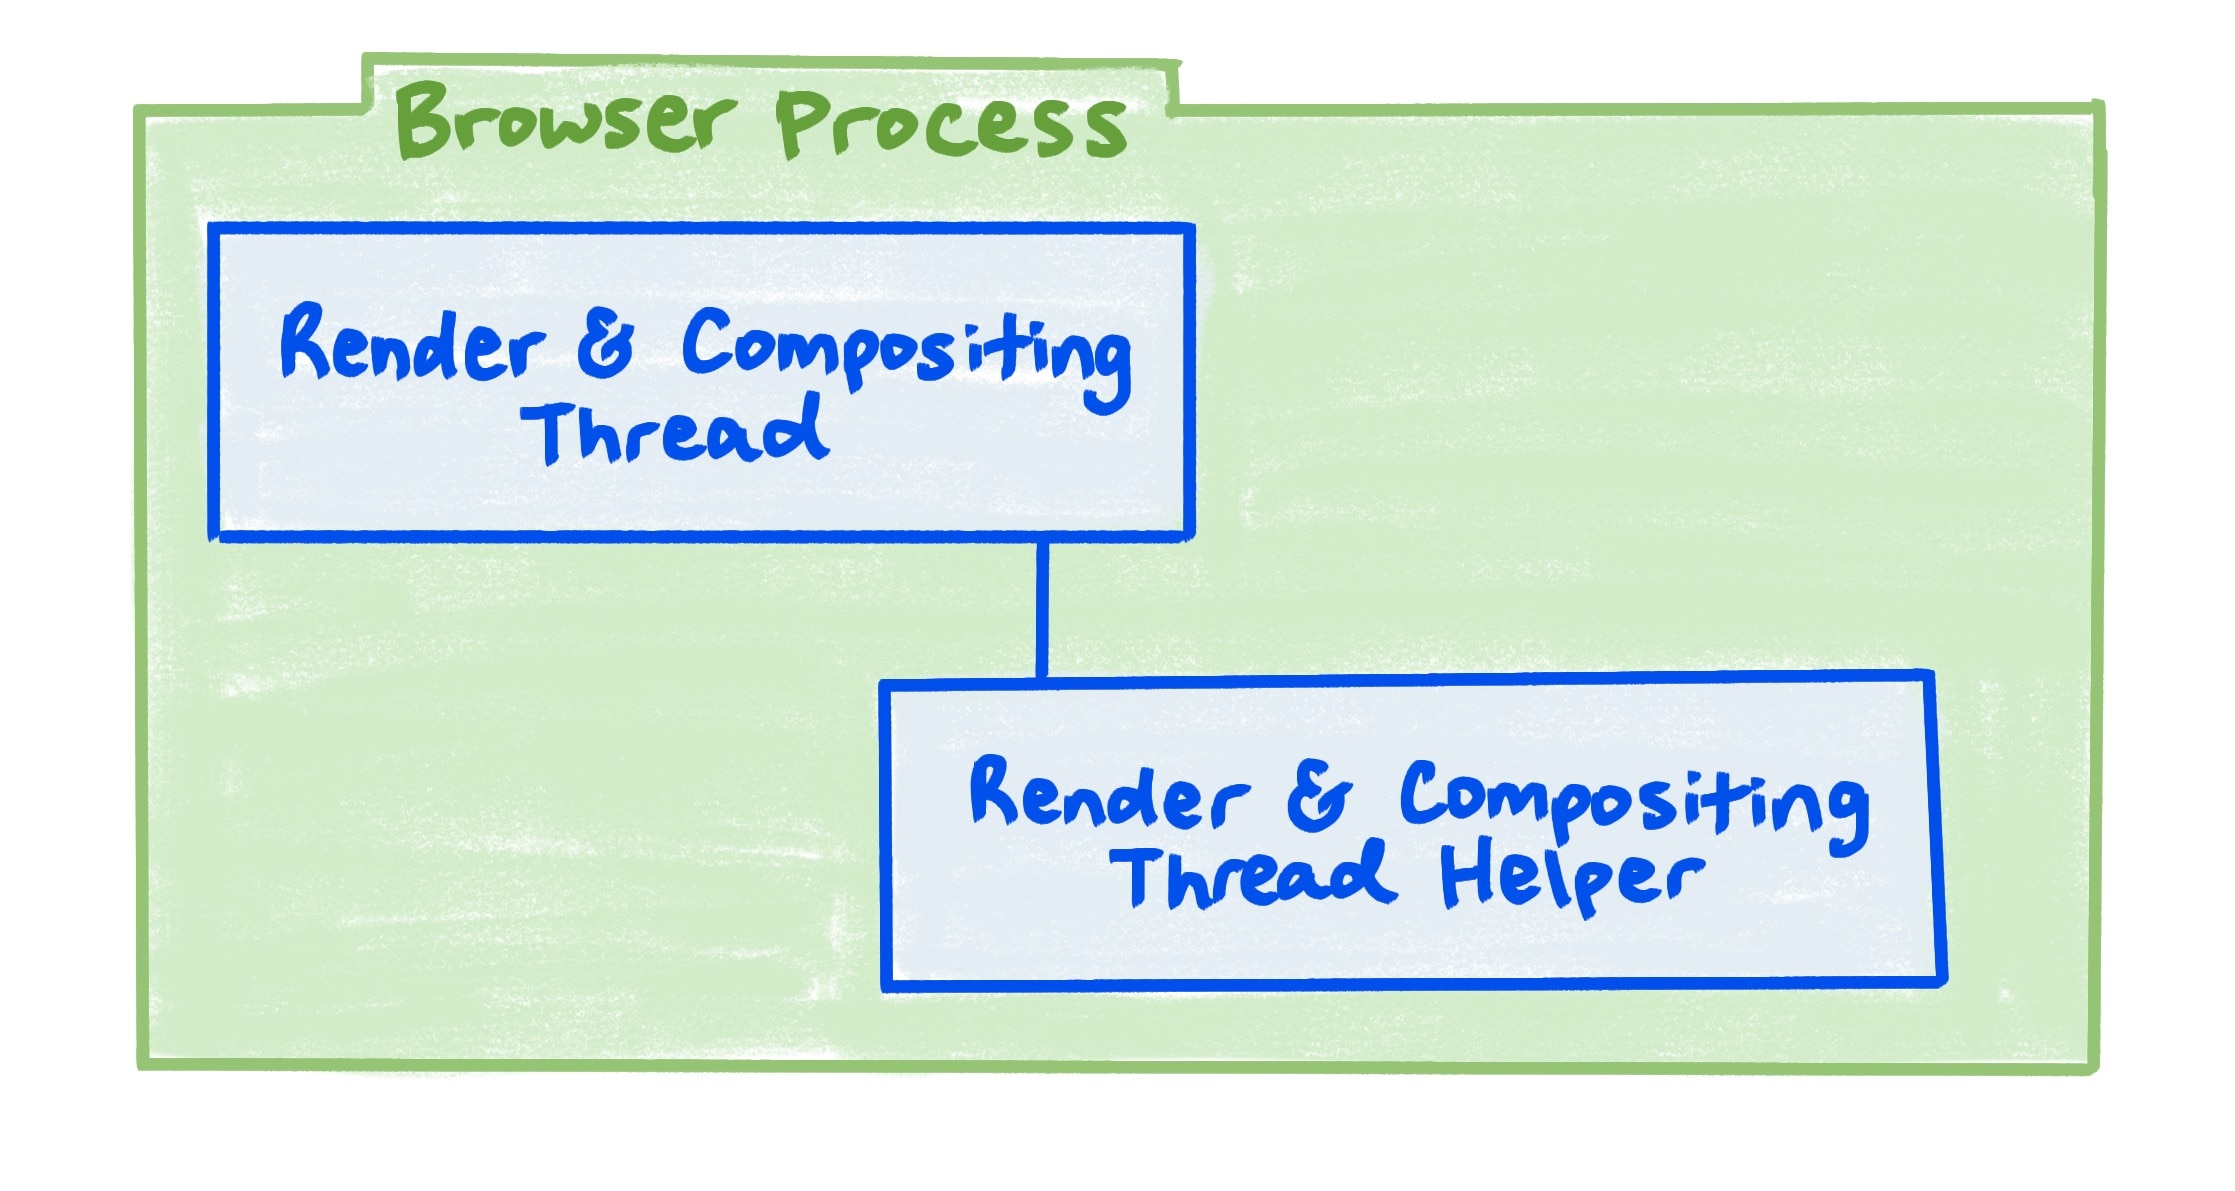 ब्राउज़र प्रोसेस का एक डायग्राम, जिसमें रेंडर और कंपोज़िटिंग थ्रेड के साथ-साथ रेंडर और कंपोज़िटिंग थ्रेड हेल्पर के बीच संबंध को दिखाया गया है.